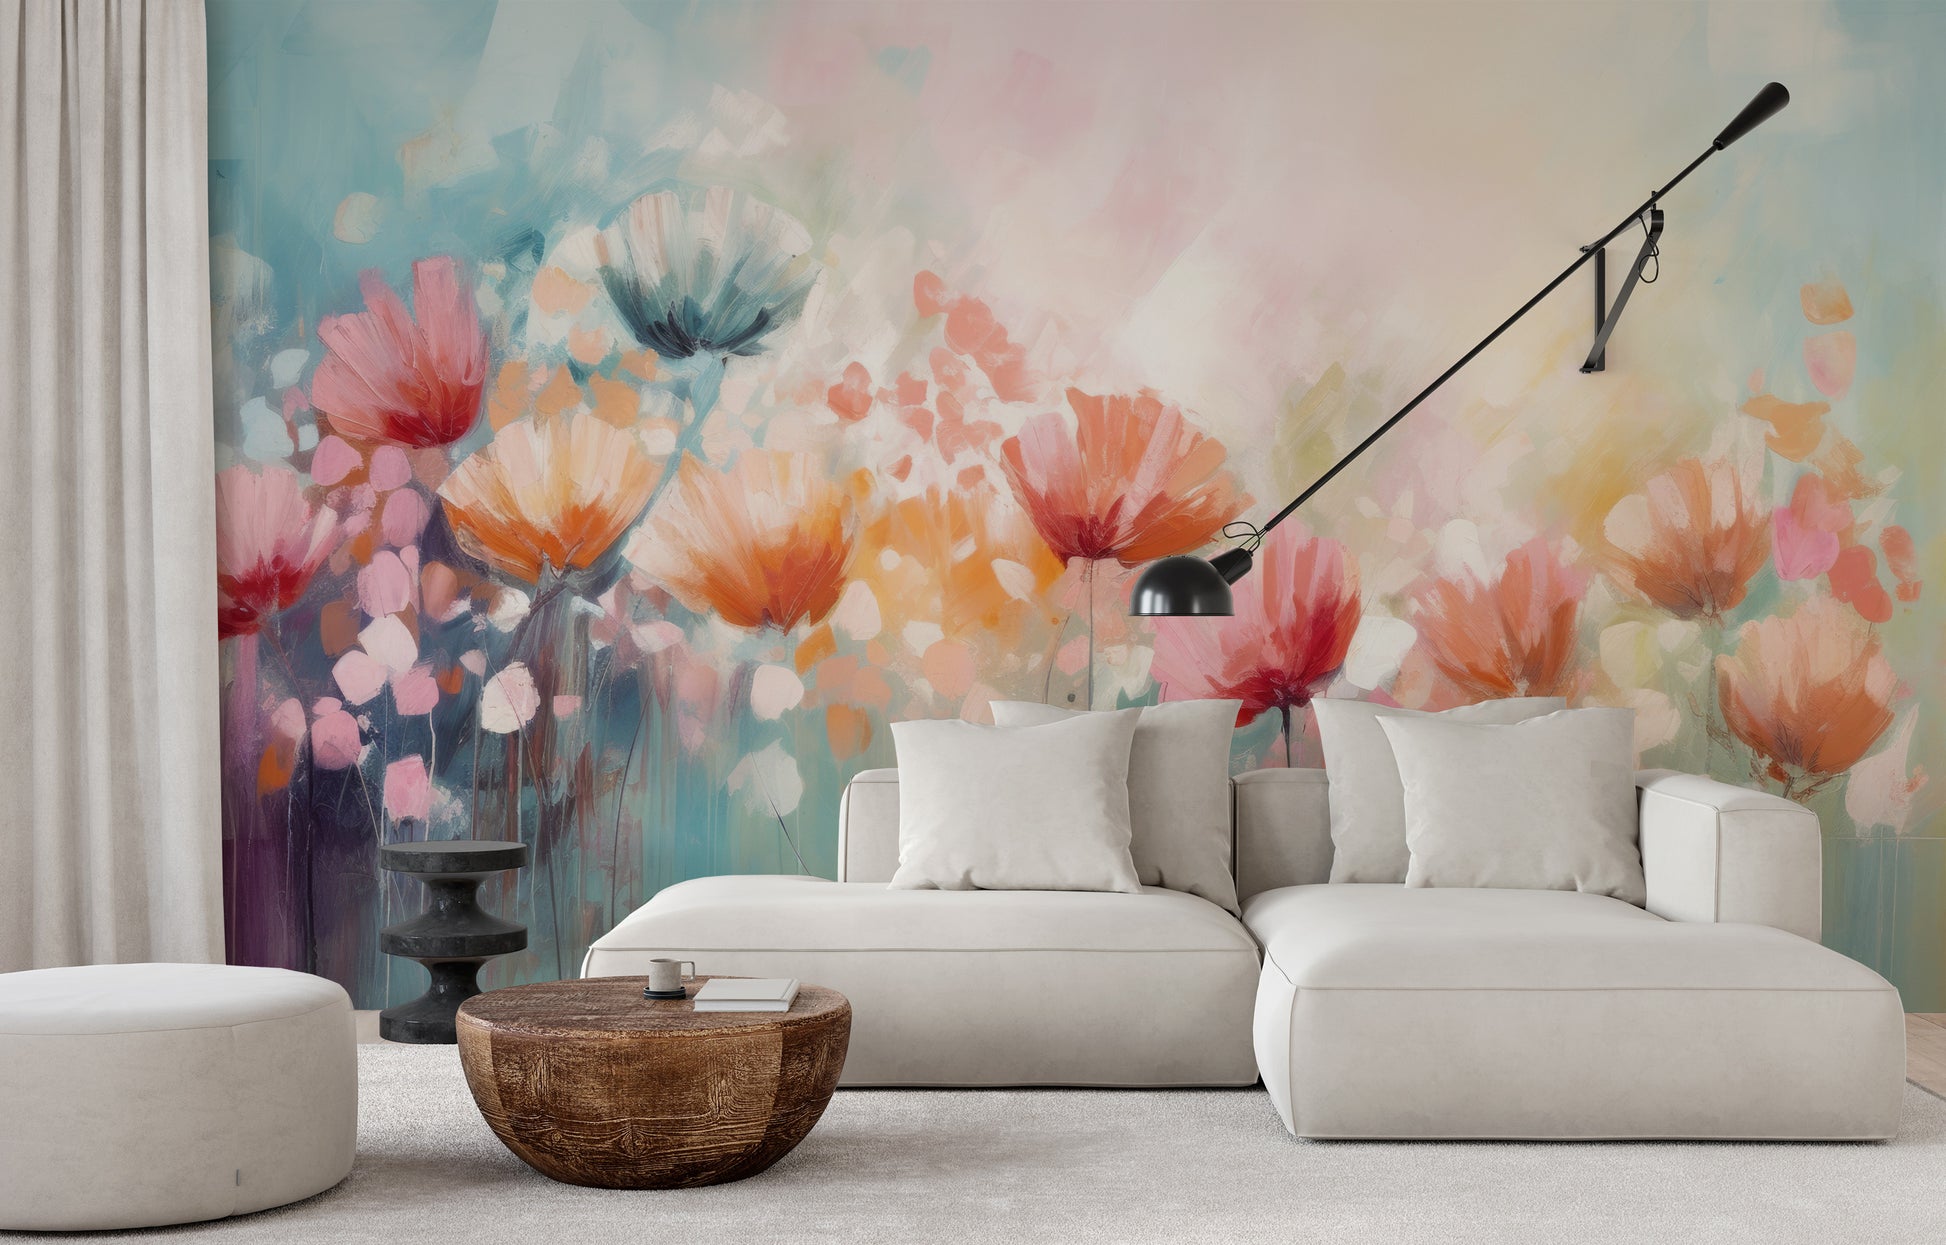 Wzór fototapety malowanej o nazwie Blossom Rain pokazanej w aranżacji wnętrza.